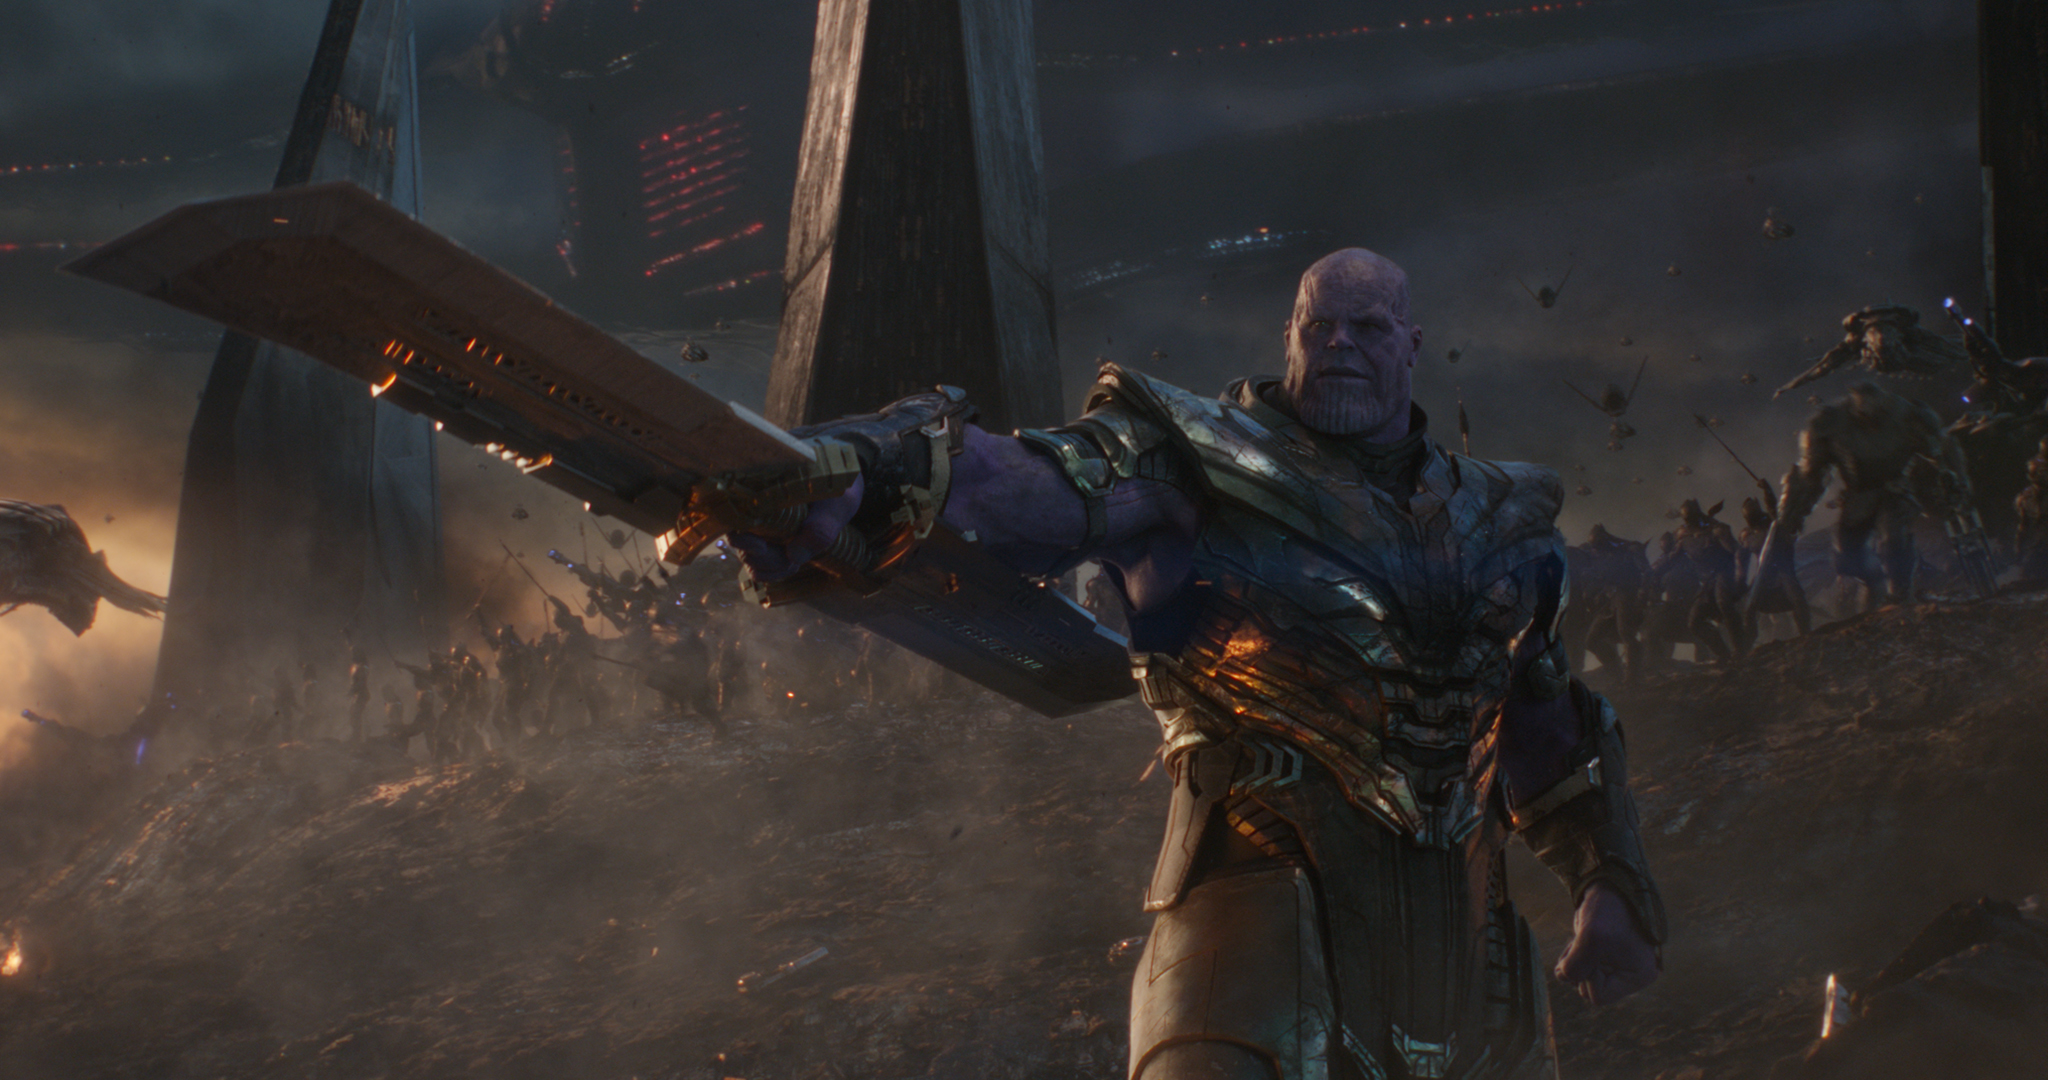 Descarga gratuita de fondo de pantalla para móvil de Películas, Thanos, Vengadores: Endgame.